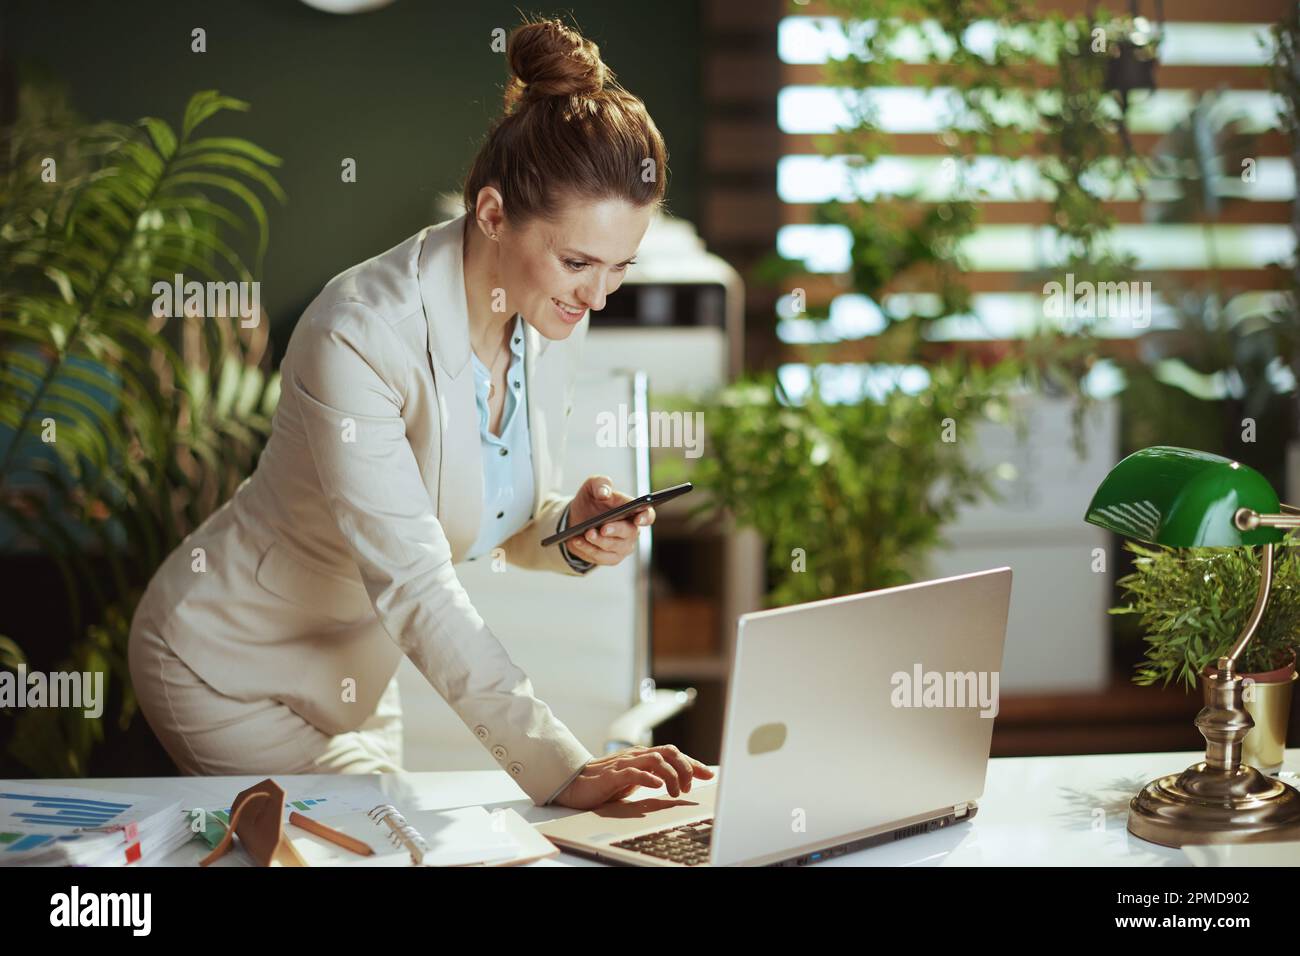 empleado moderno sonriente de la mujer de mediana edad en un traje ligero del negocio en la oficina verde moderna con el ordenador portátil usando la aplicación del smartphone. Foto de stock